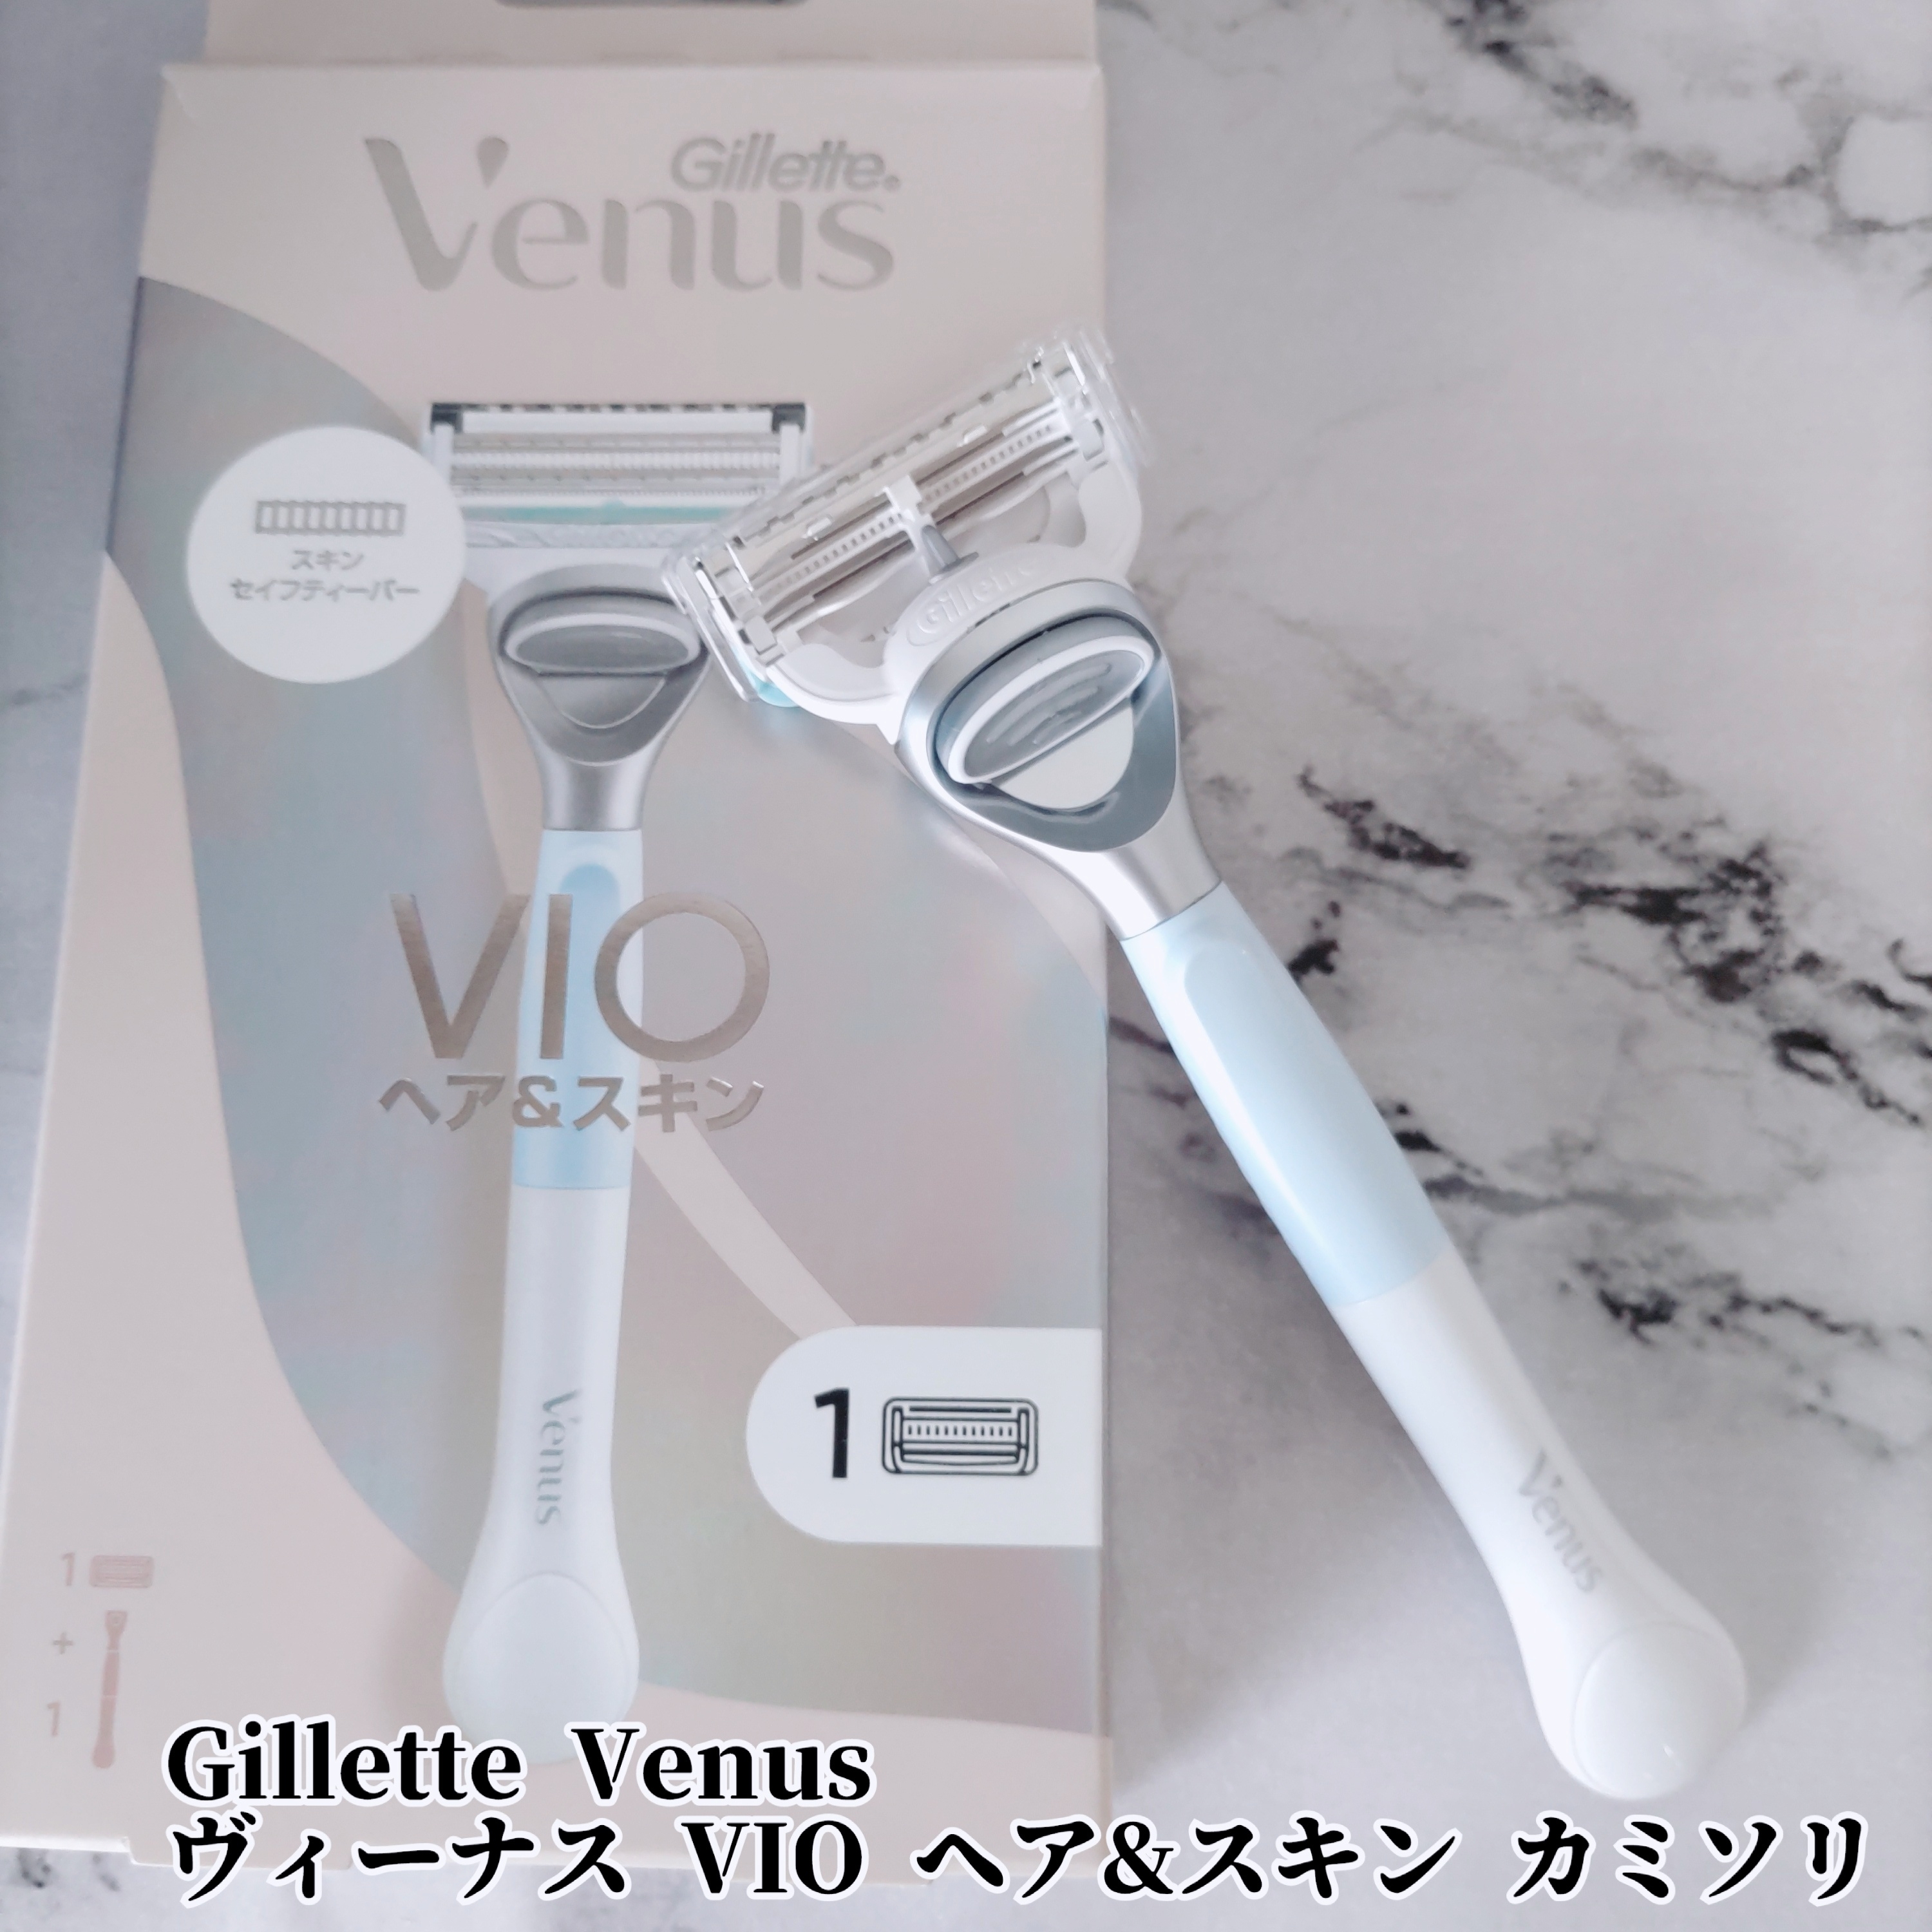 Gillette Venus
ヴィーナス VIO ヘア&スキン カミソリを使ったYuKaRi♡さんのクチコミ画像1